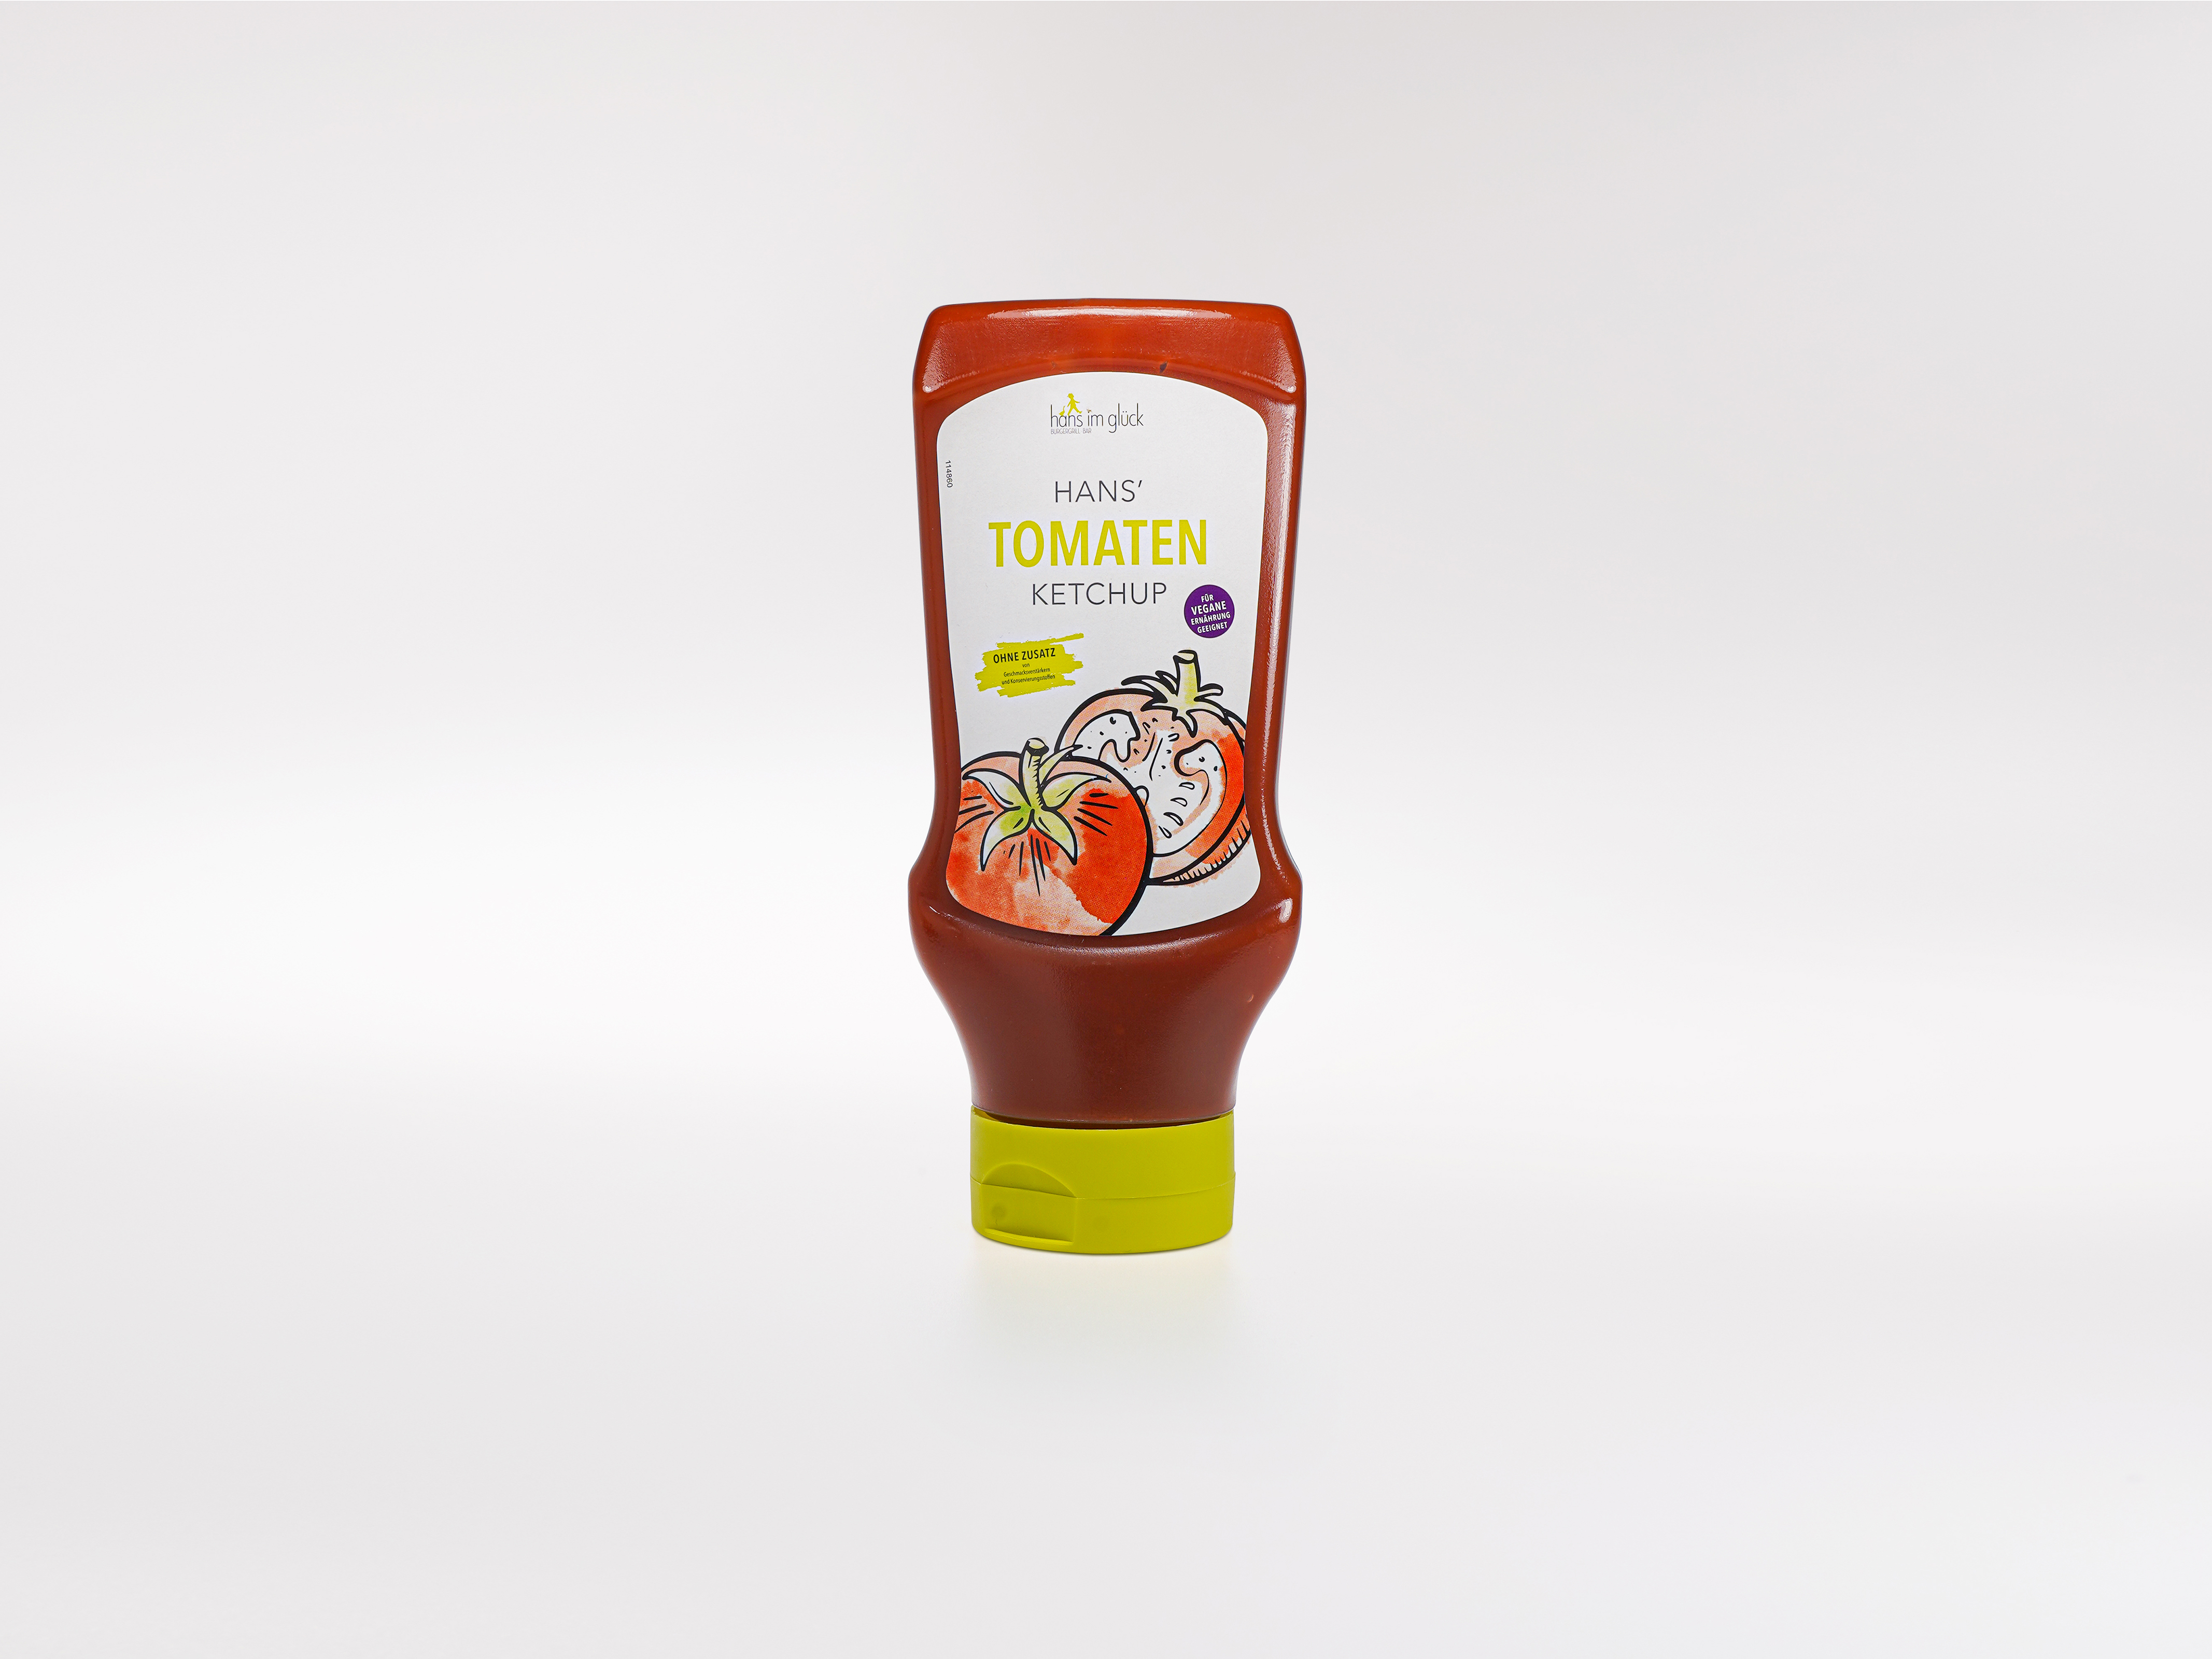 Hans' Tomaten Ketchup (500 ml)